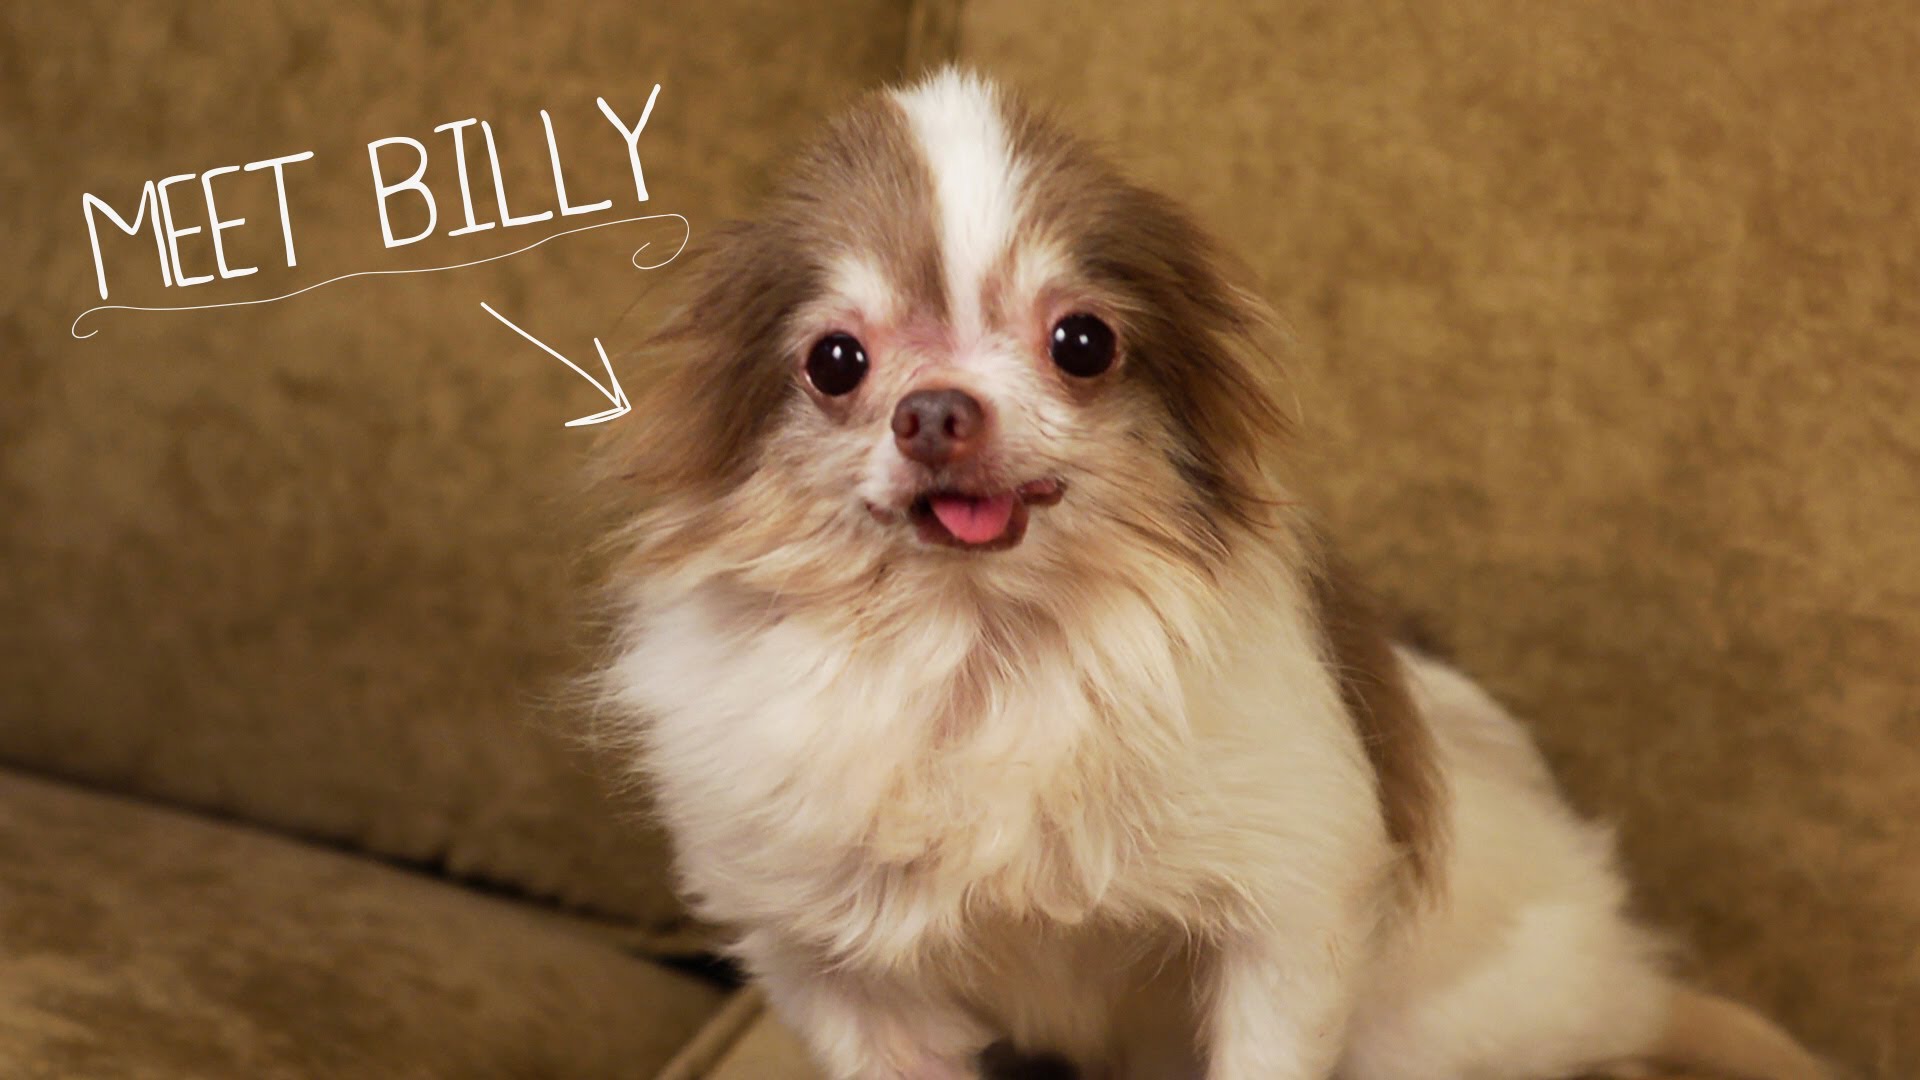 VIDEO – Iepazīsties Billijs! Viņa dzīvesstāsts vienaldzīgu neatstās nevienu! (Meet Billy)